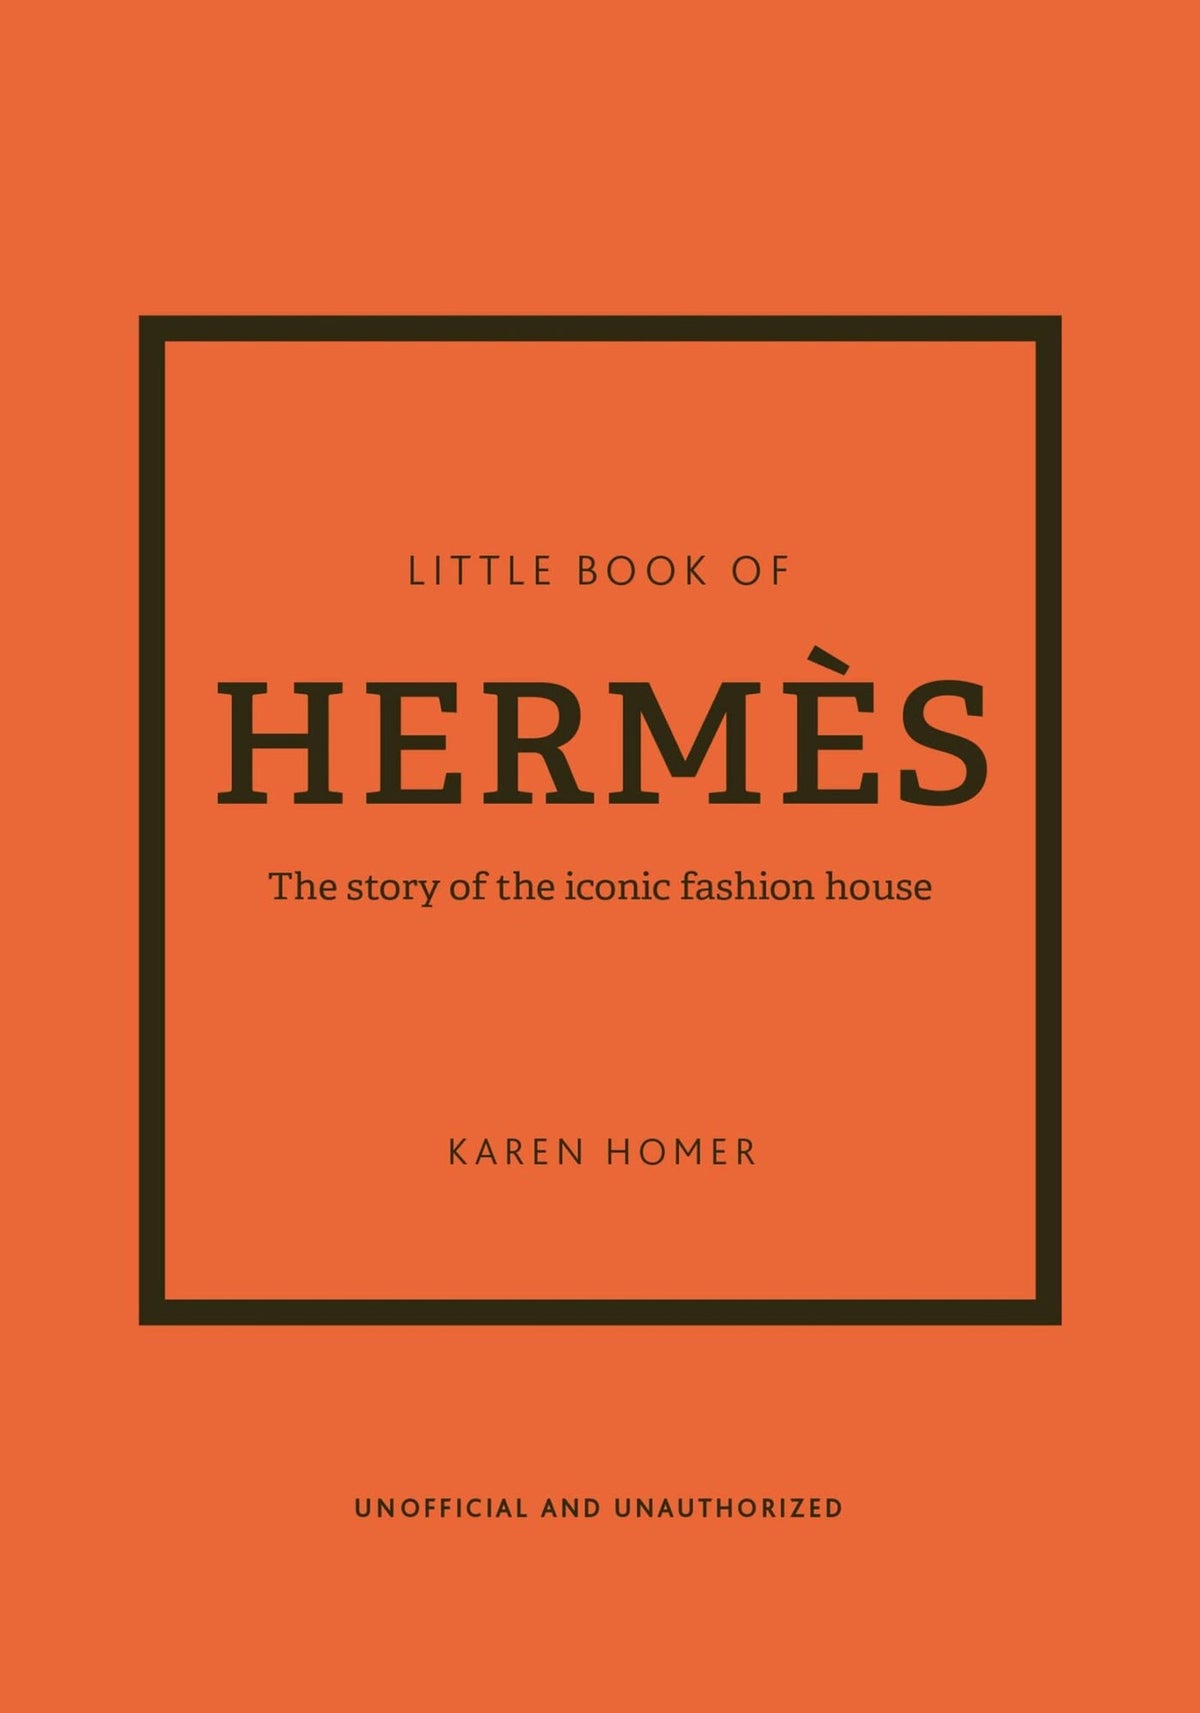 Little Book of Hermés